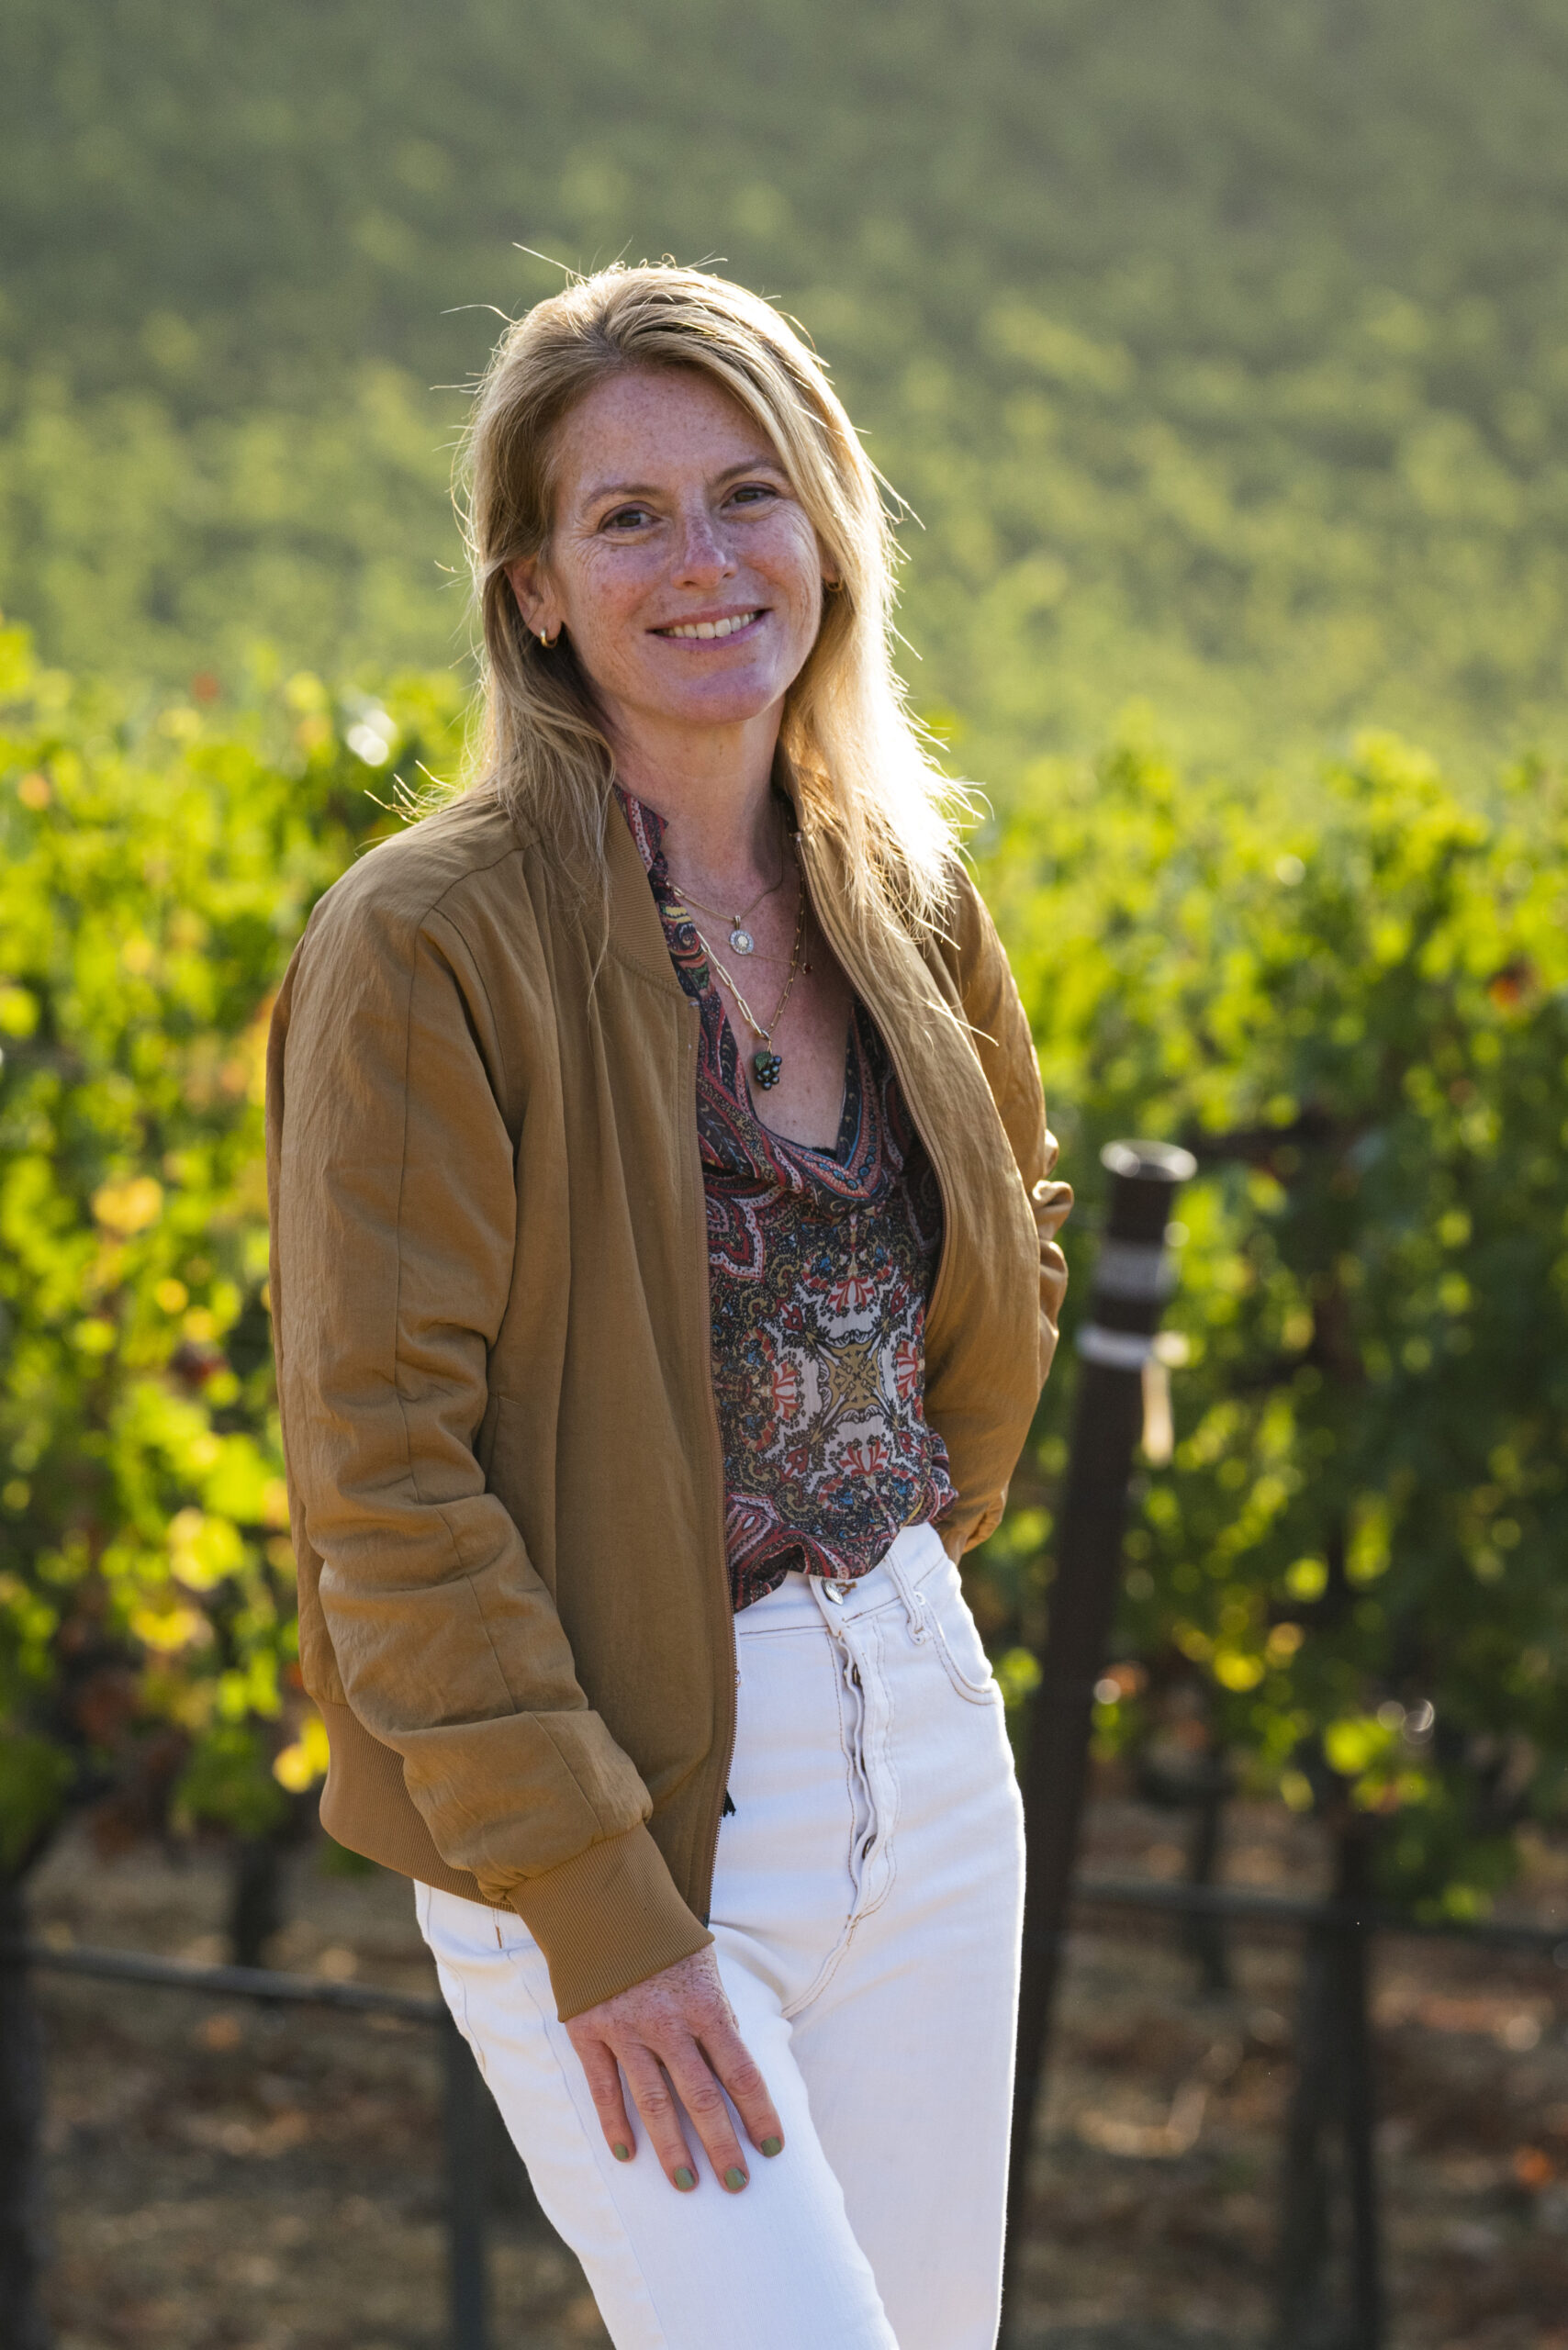 Rachel Martin standing in vineyard